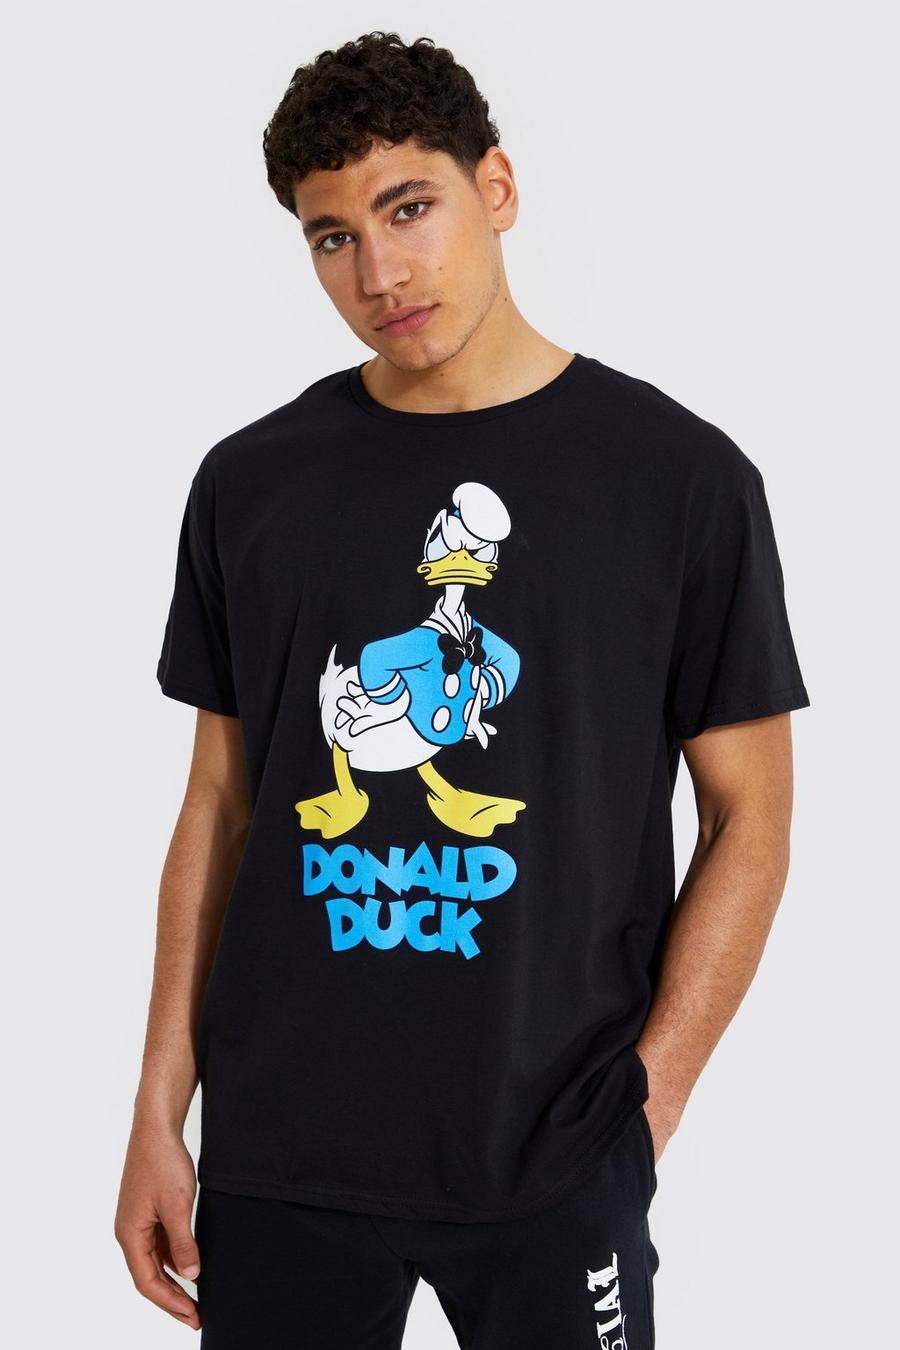 שחור nero טישרט עם הדפס Donald Duck כועס